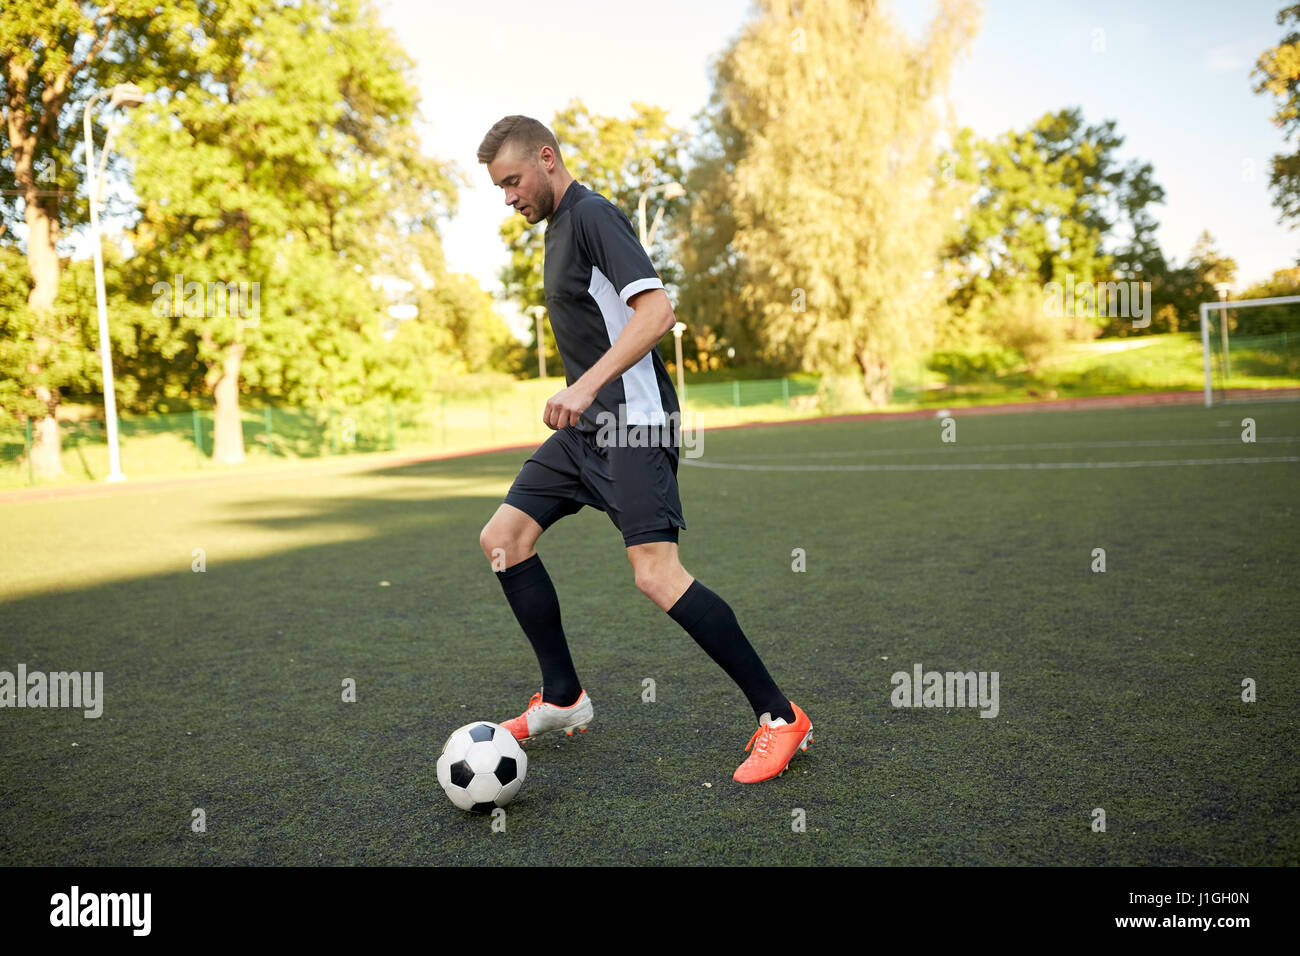 Fußballspieler mit Ball auf Fußballplatz spielen Stockfoto